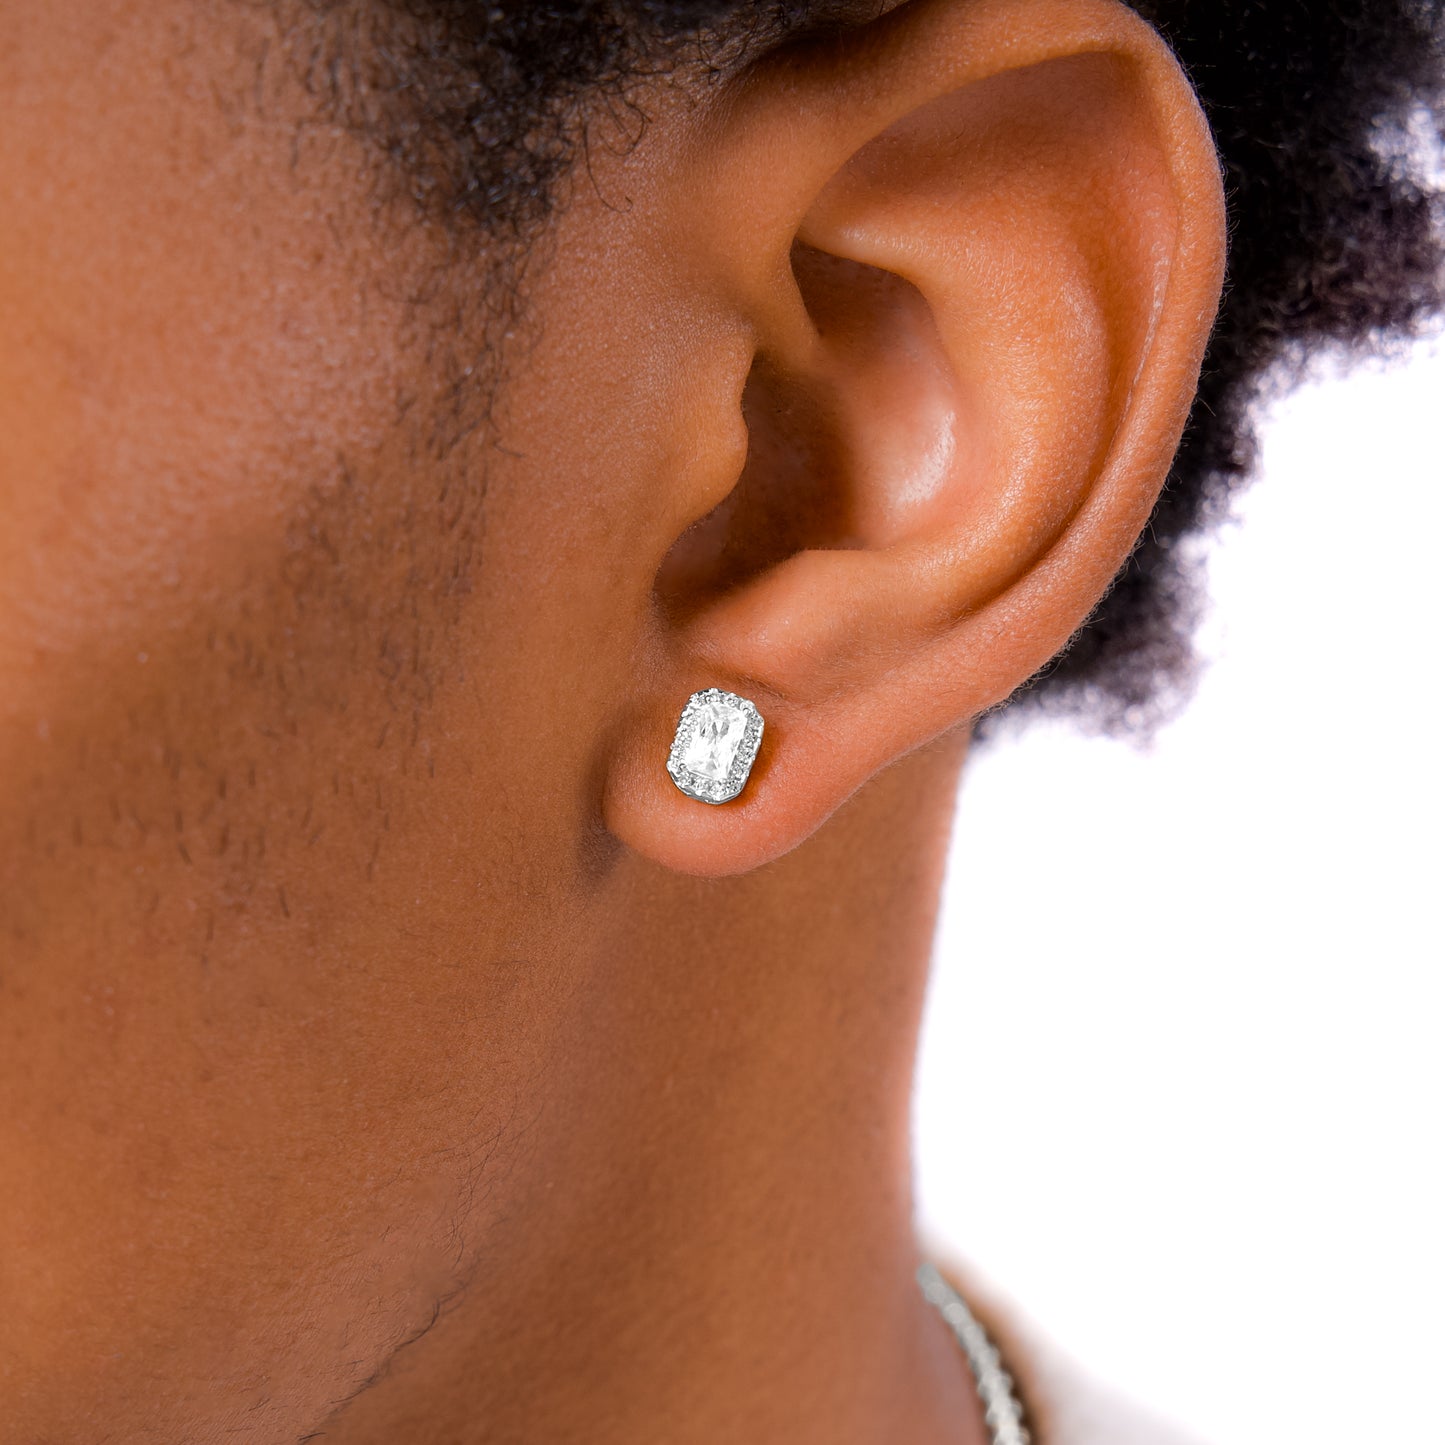 Baguette earrings